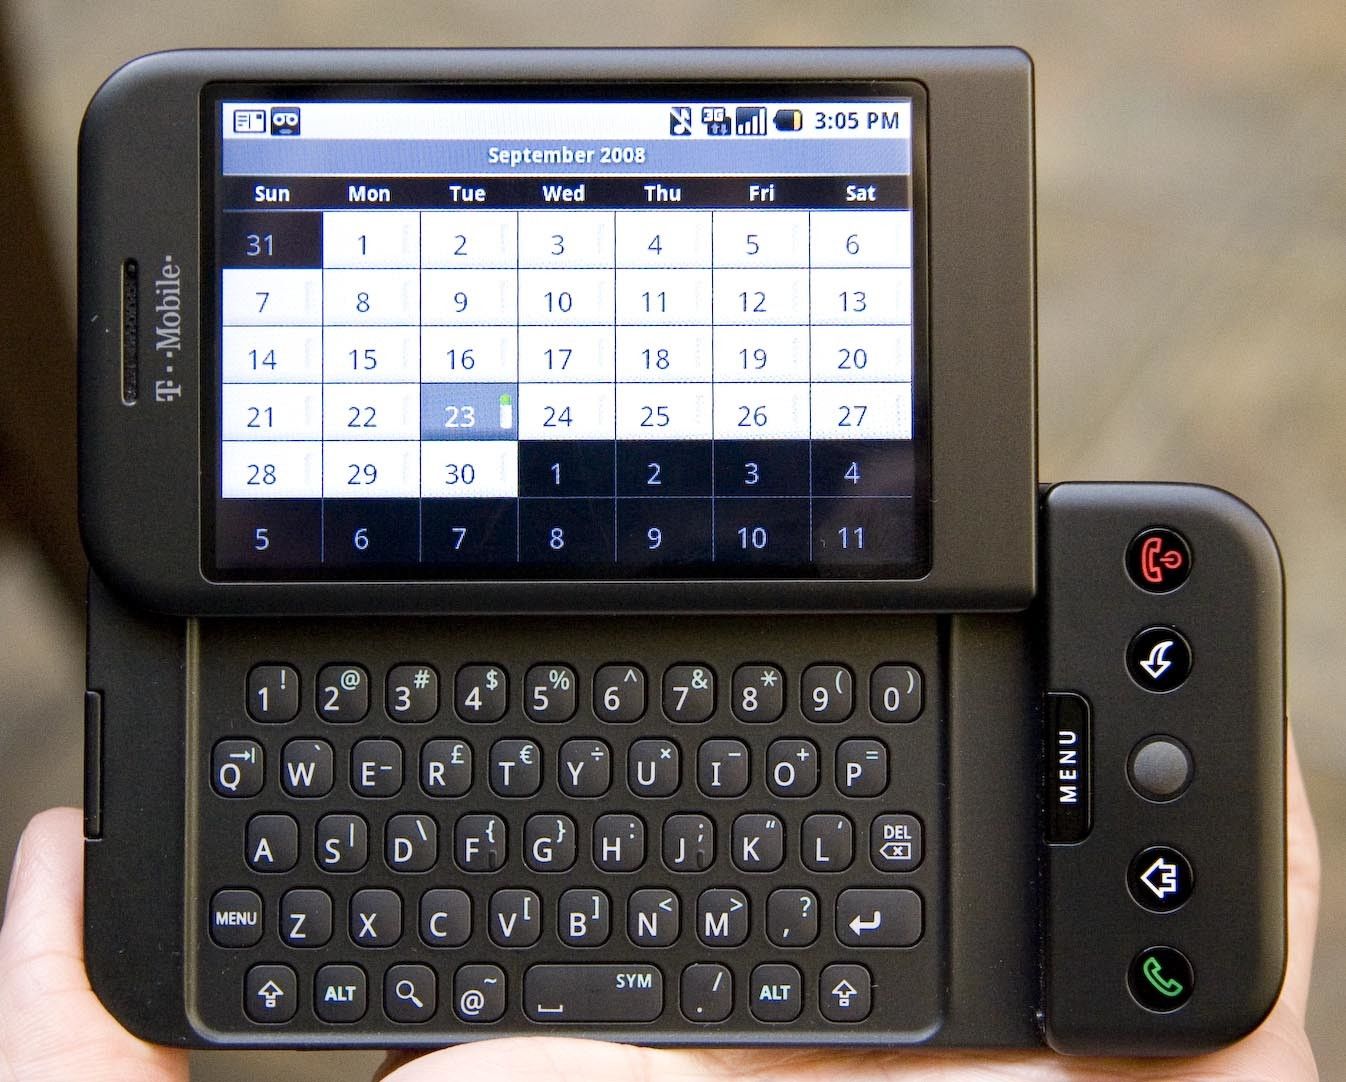 Abbildung 2: HTC Dream oder auch T-Mobile G1, das erste Android Telefon. Veröffentlichung Herbst 2008, Sergey Brin und Larry Page standen mit Inline Skates auf der Bühne